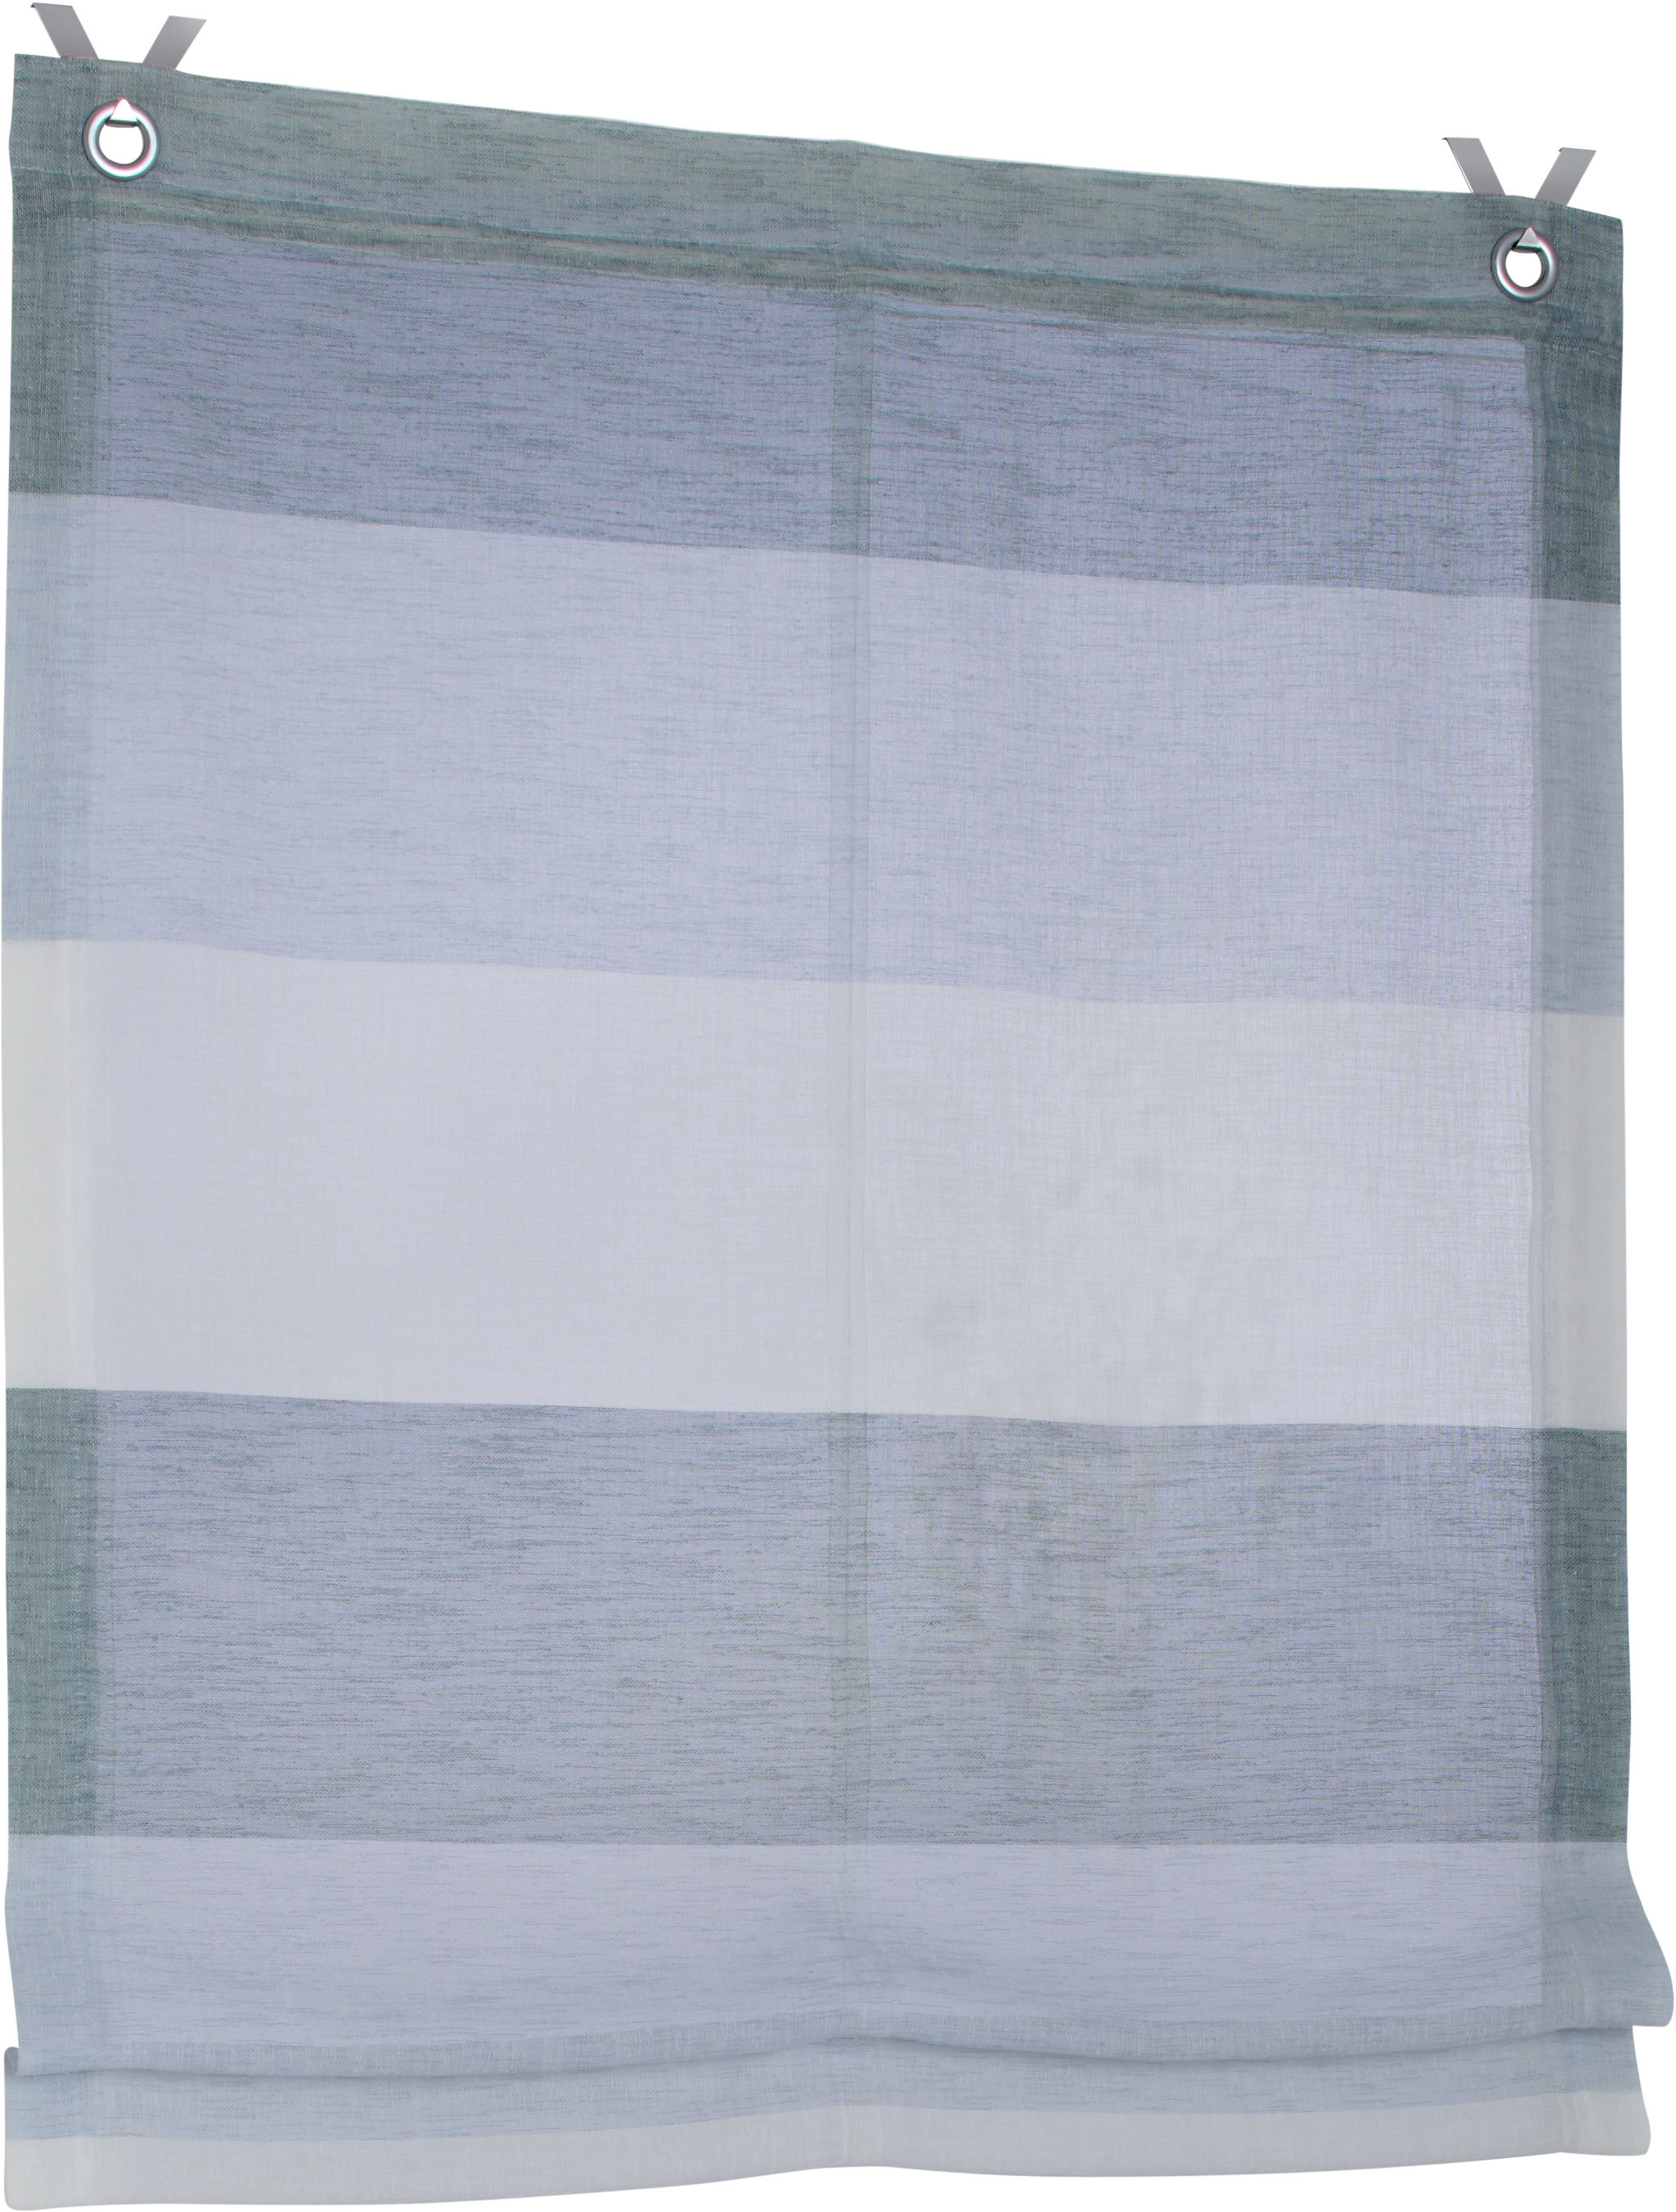 Kutti Raffrollo Ösenrollo Marit gestreift grau/beige/Creme mit Webstreifen Breite 100 cm x Höhe 120 cm, incl. Fensterhaken